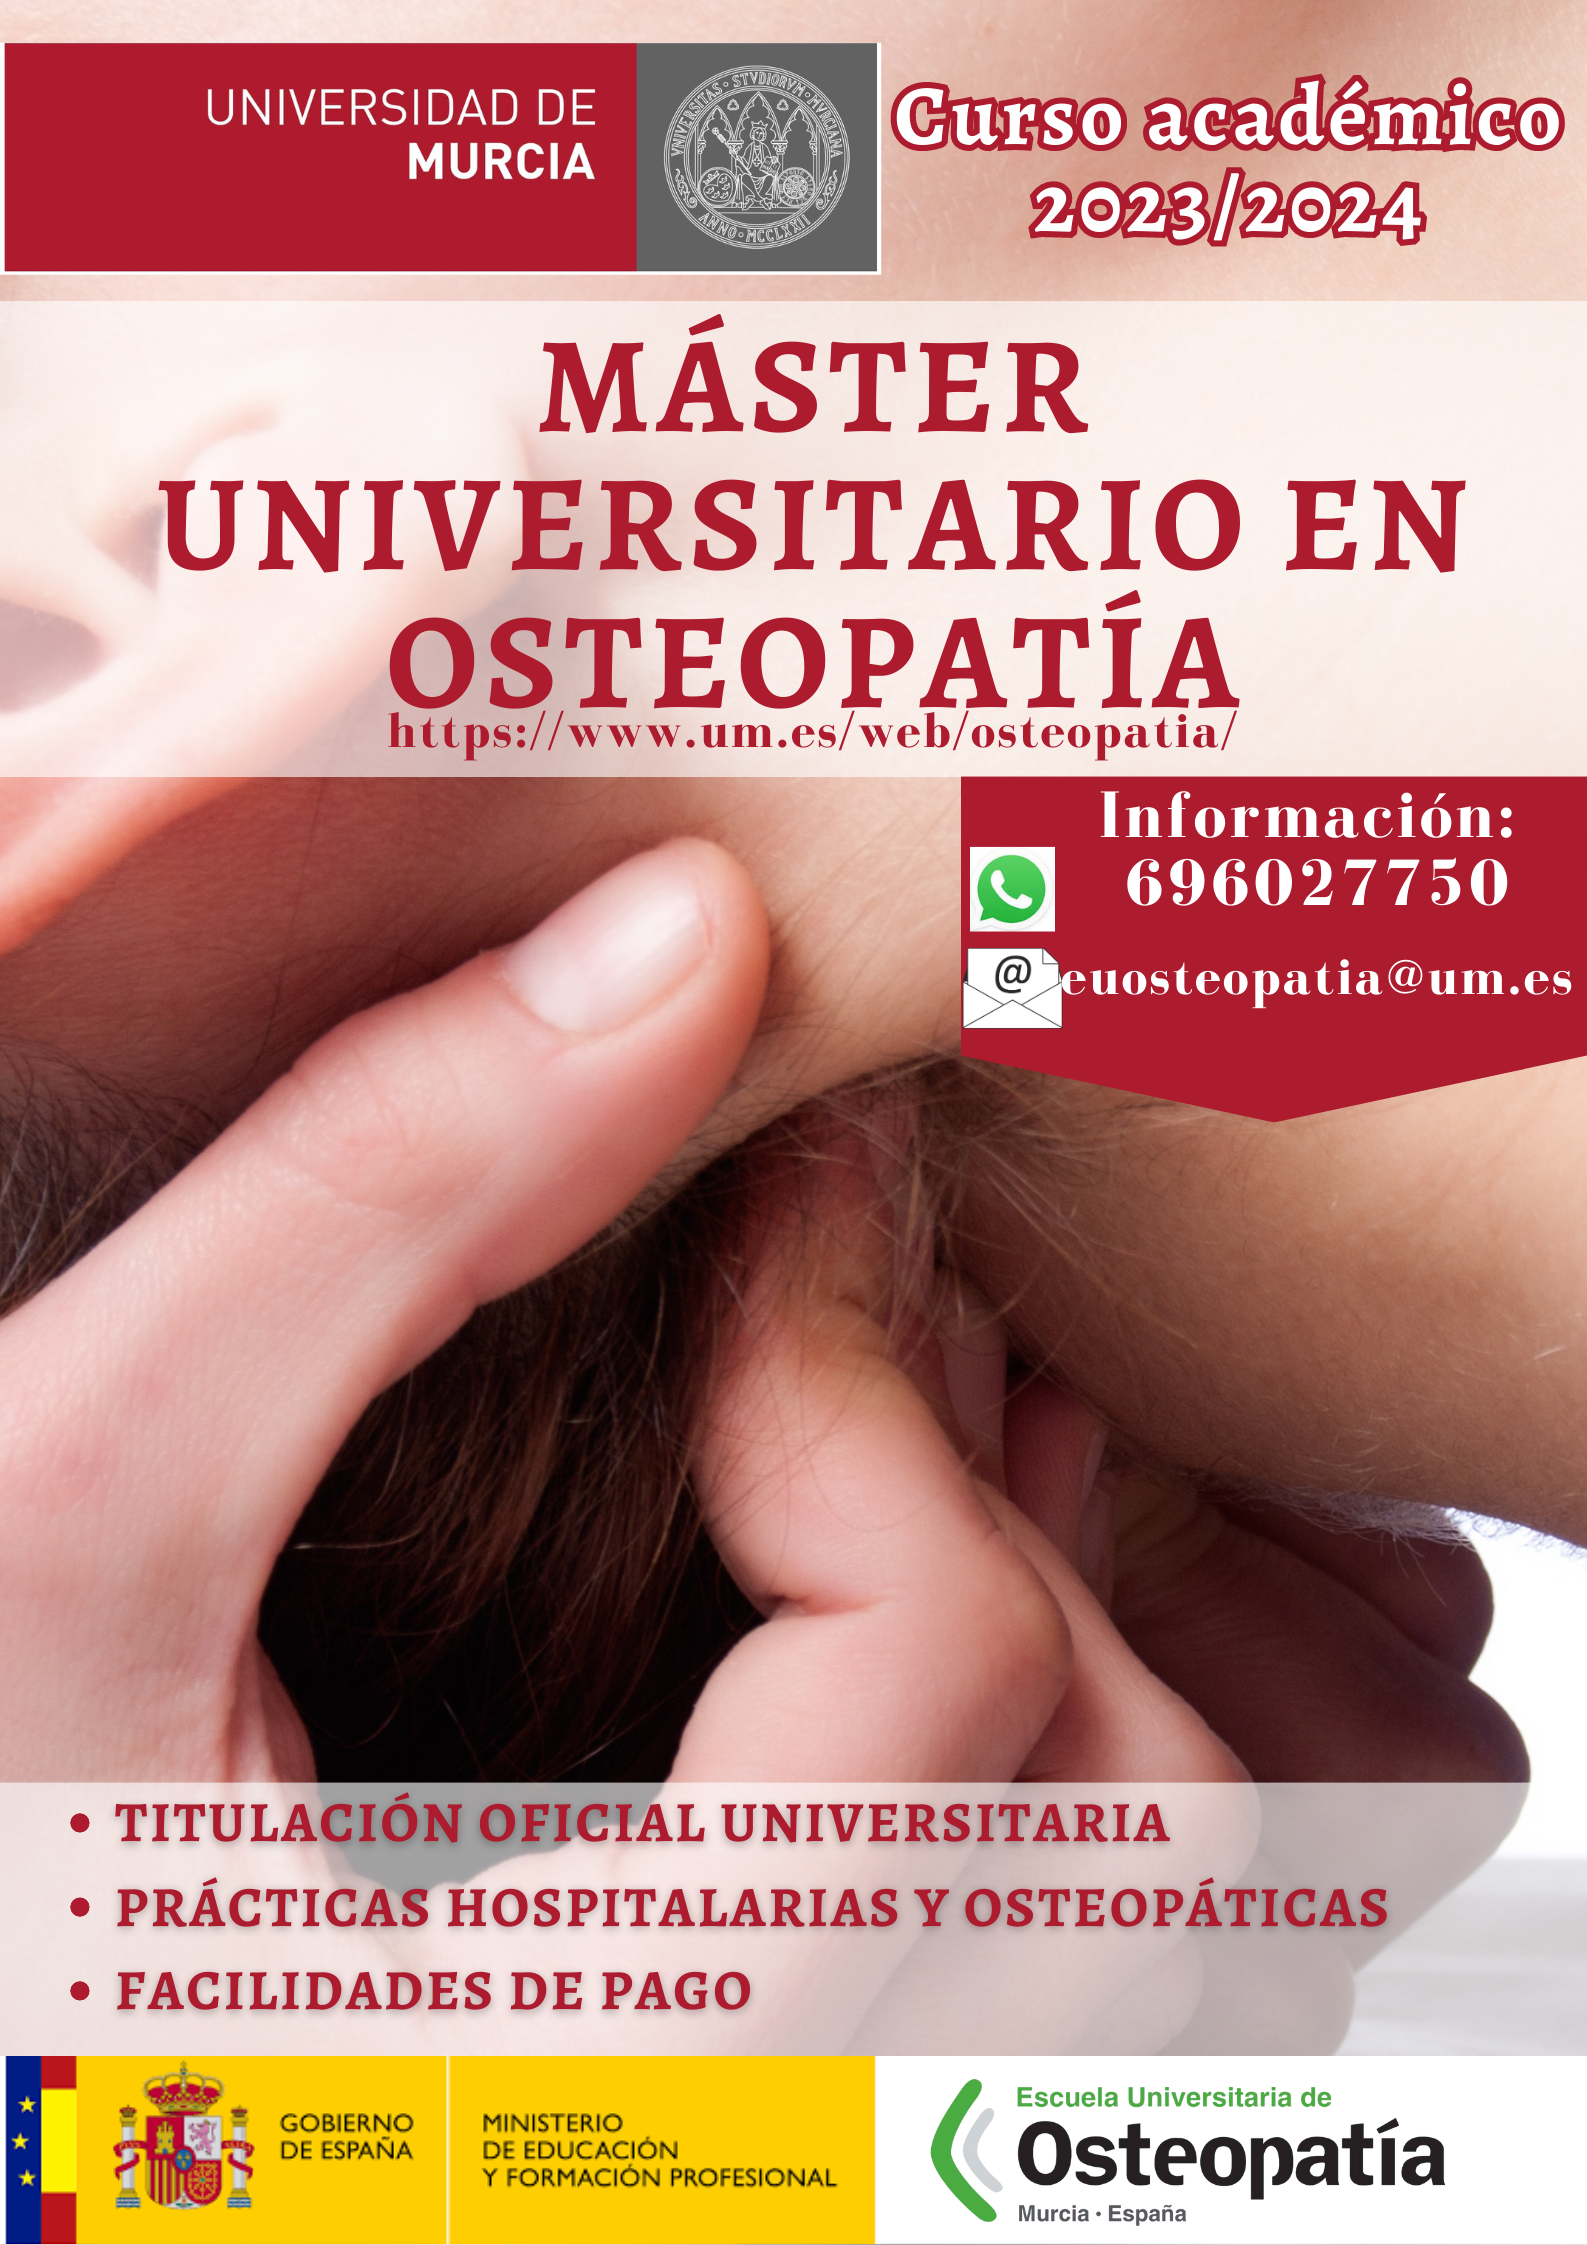 Imagen asociada al enlace con título Máster Universitario en Osteopatía